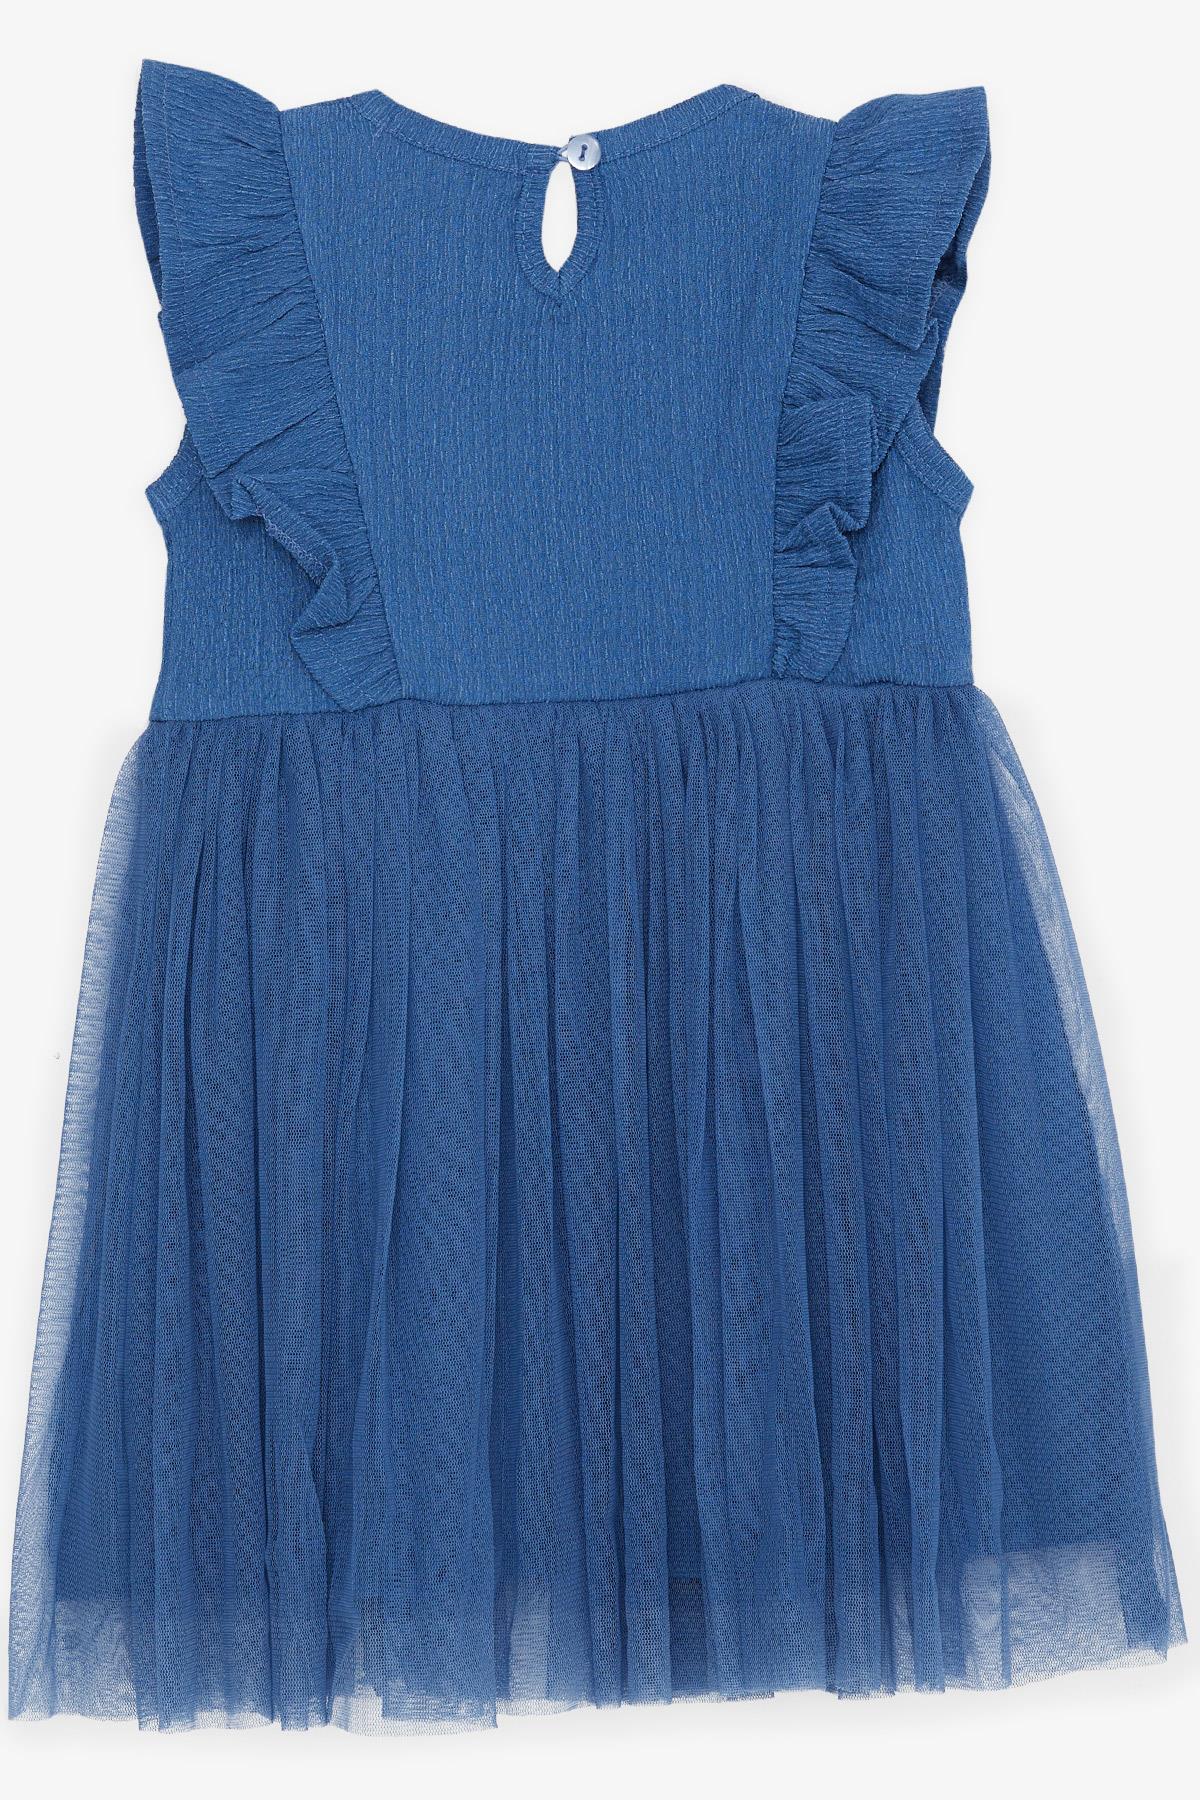 Kız Çocuk Elbise Tüllü Fırfırlı İndigo 3-6 Yaş - Yazlık Elbiseler | Breeze